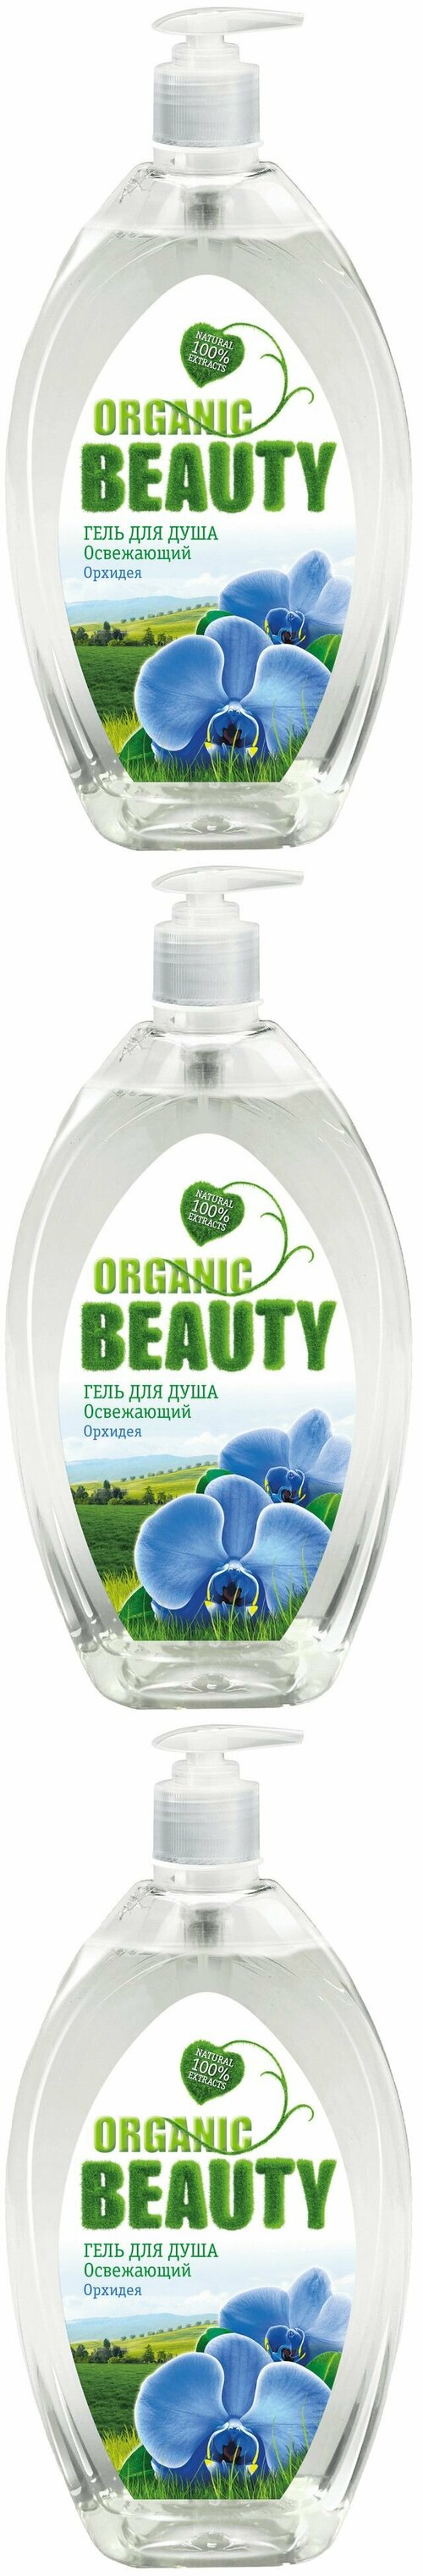 Organic Beauty Гель для душа Освежающий, Бамбук и Зеленый чай, 1000 мл, 3 шт.